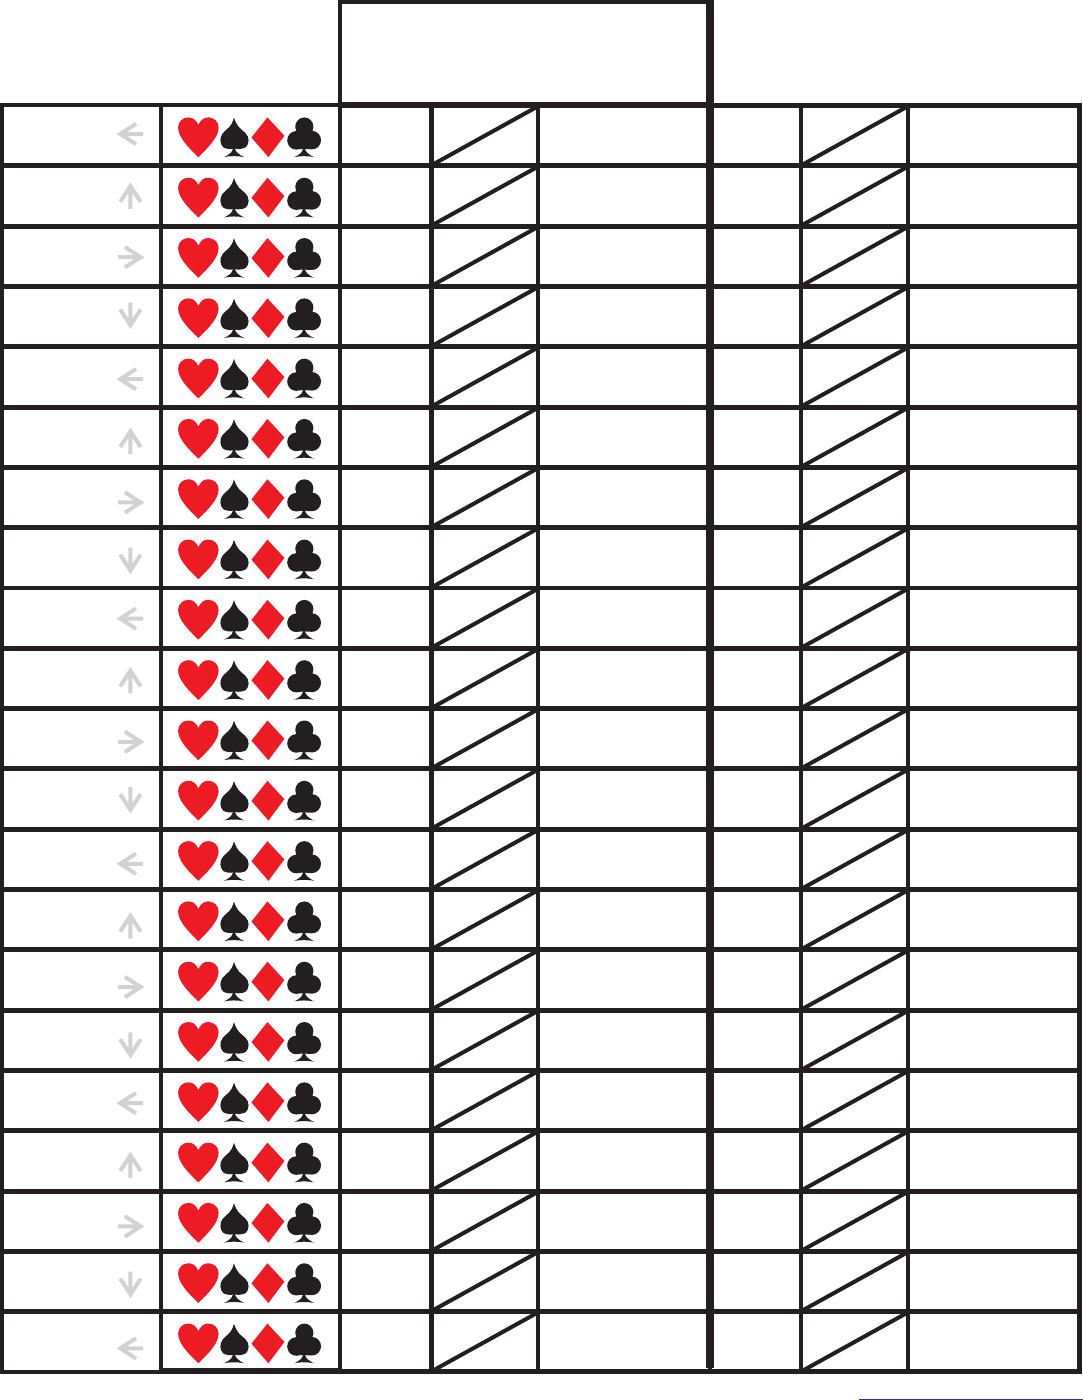 free-pinochle-score-pad-pdf-27kb-1-page-s